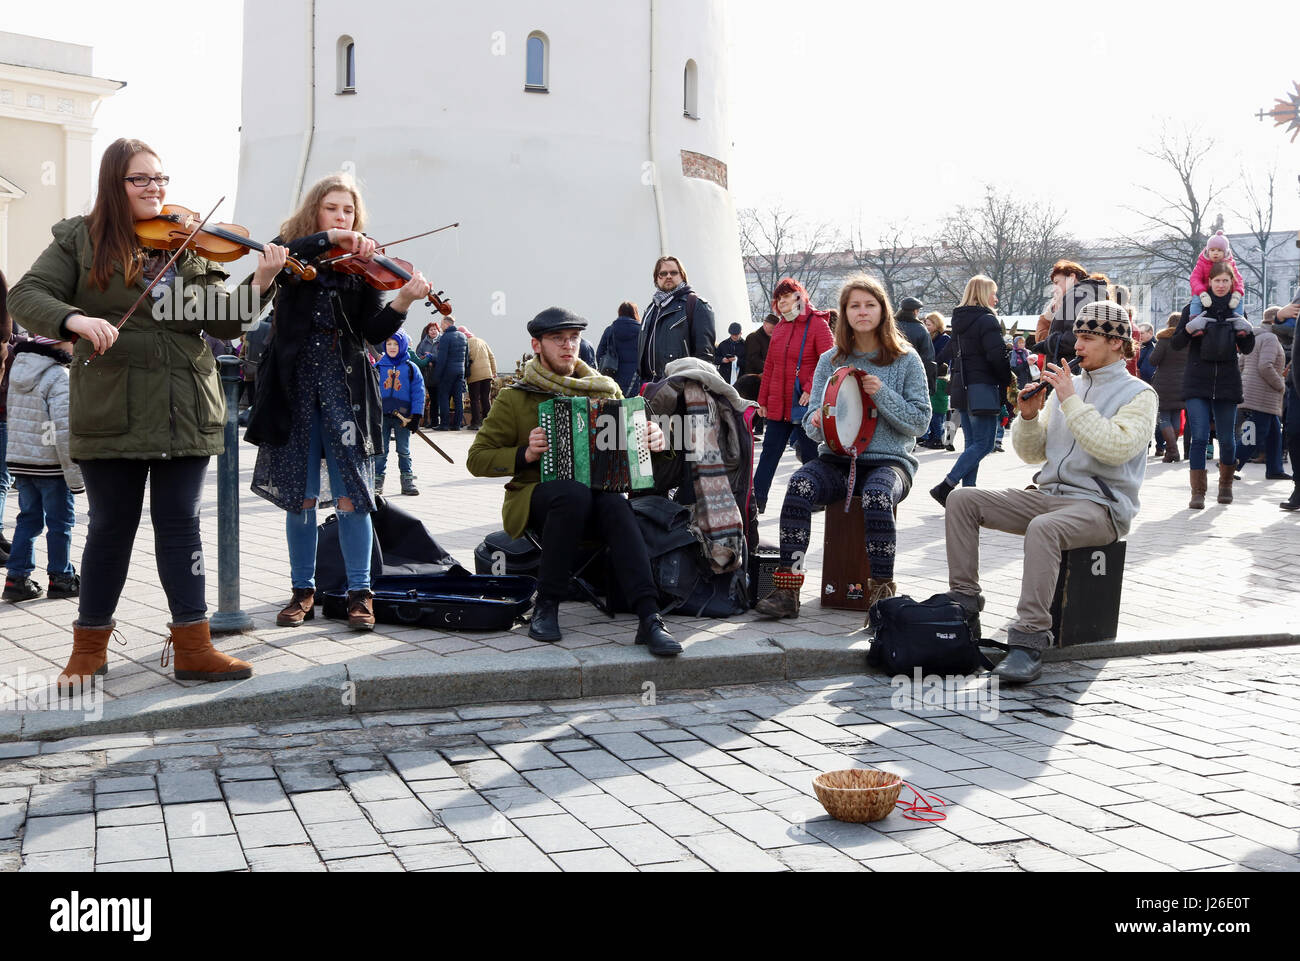 VILNIUS, Litauen-4. März 2017: junge litauische Straßenmusiker spielen und singen die folk-Country-Songs um ein wenig Geld für Essen zu verdienen Stockfoto